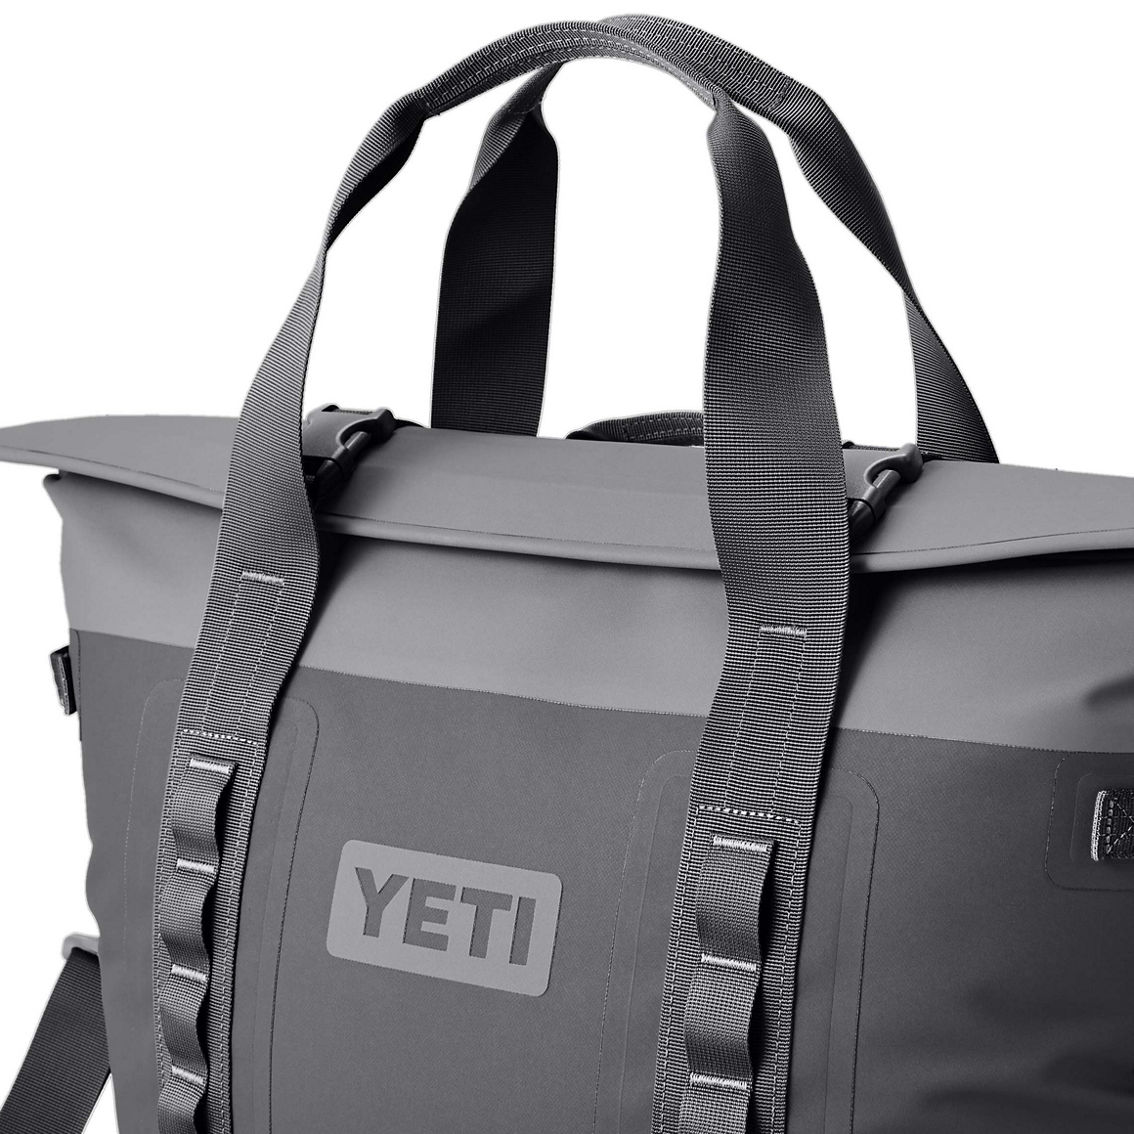 Yeti Hopper M30 2.0 Backpack - Image 3 of 3